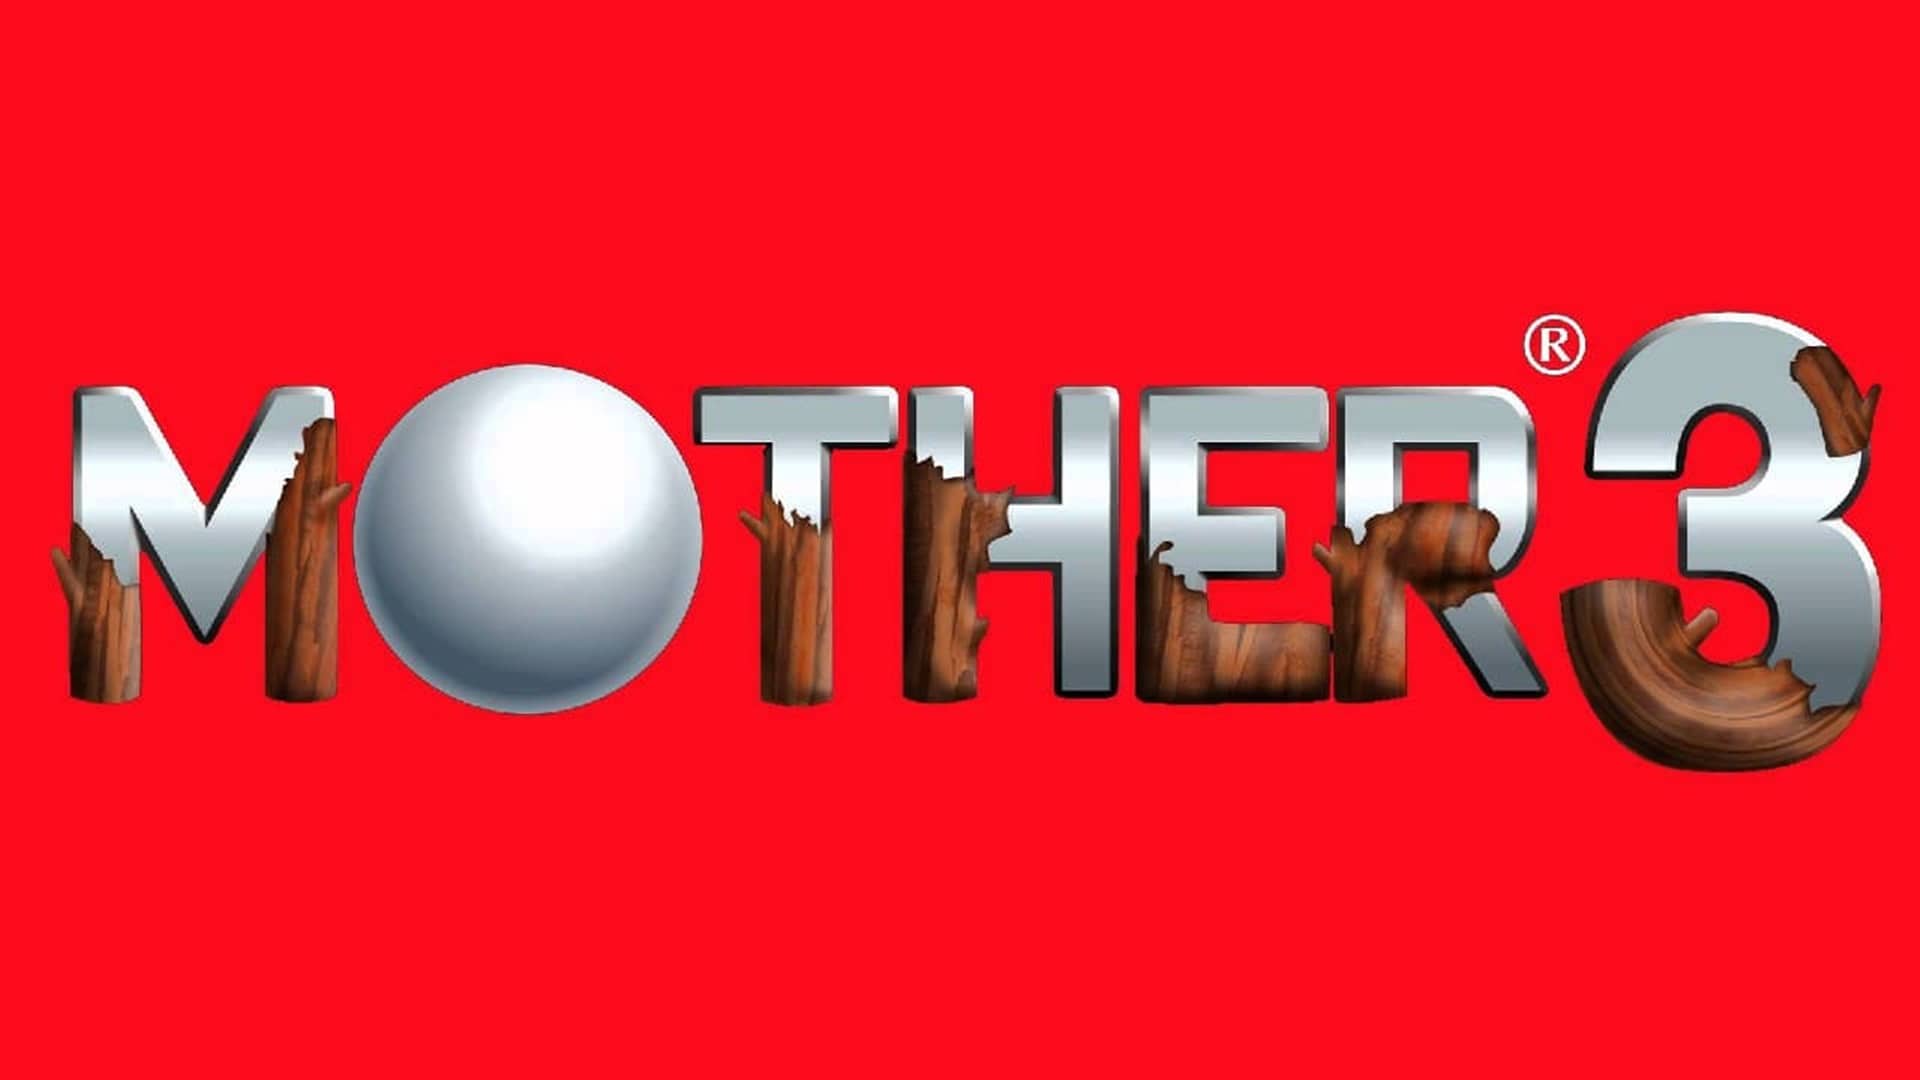 Reggie Fils-Aimé confiesa que localizar Mother 3 'no tenía sentido comercial', GamersRD